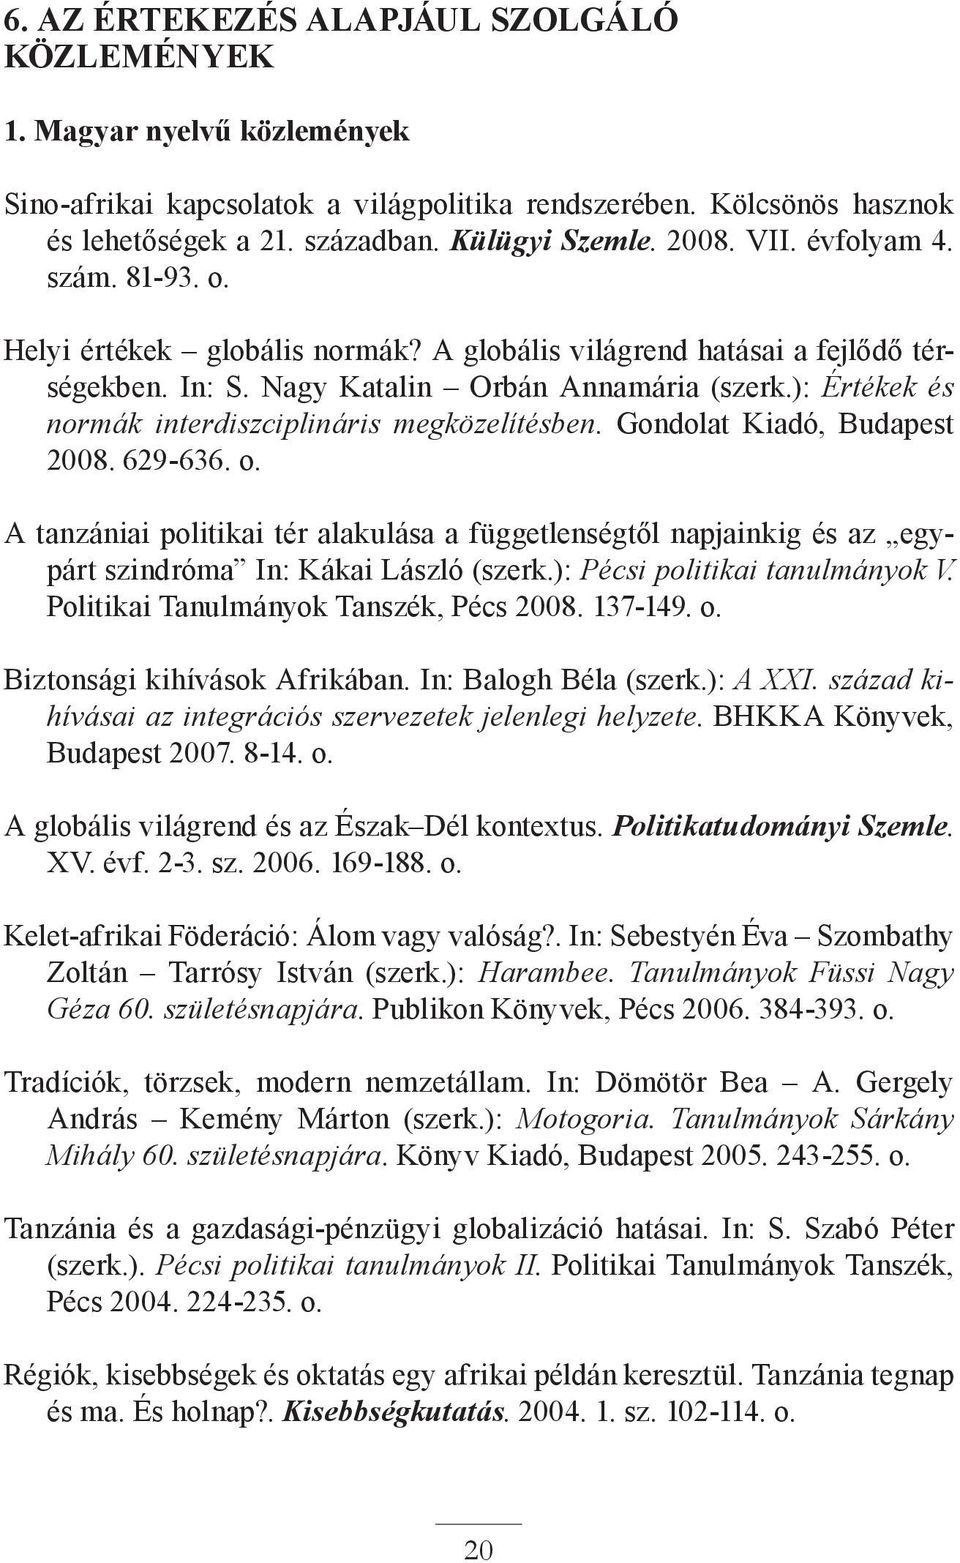 ): Értékek és normák interdiszciplináris megközelítésben. Gondolat Kiadó, Budapest 2008. 629-636. o.